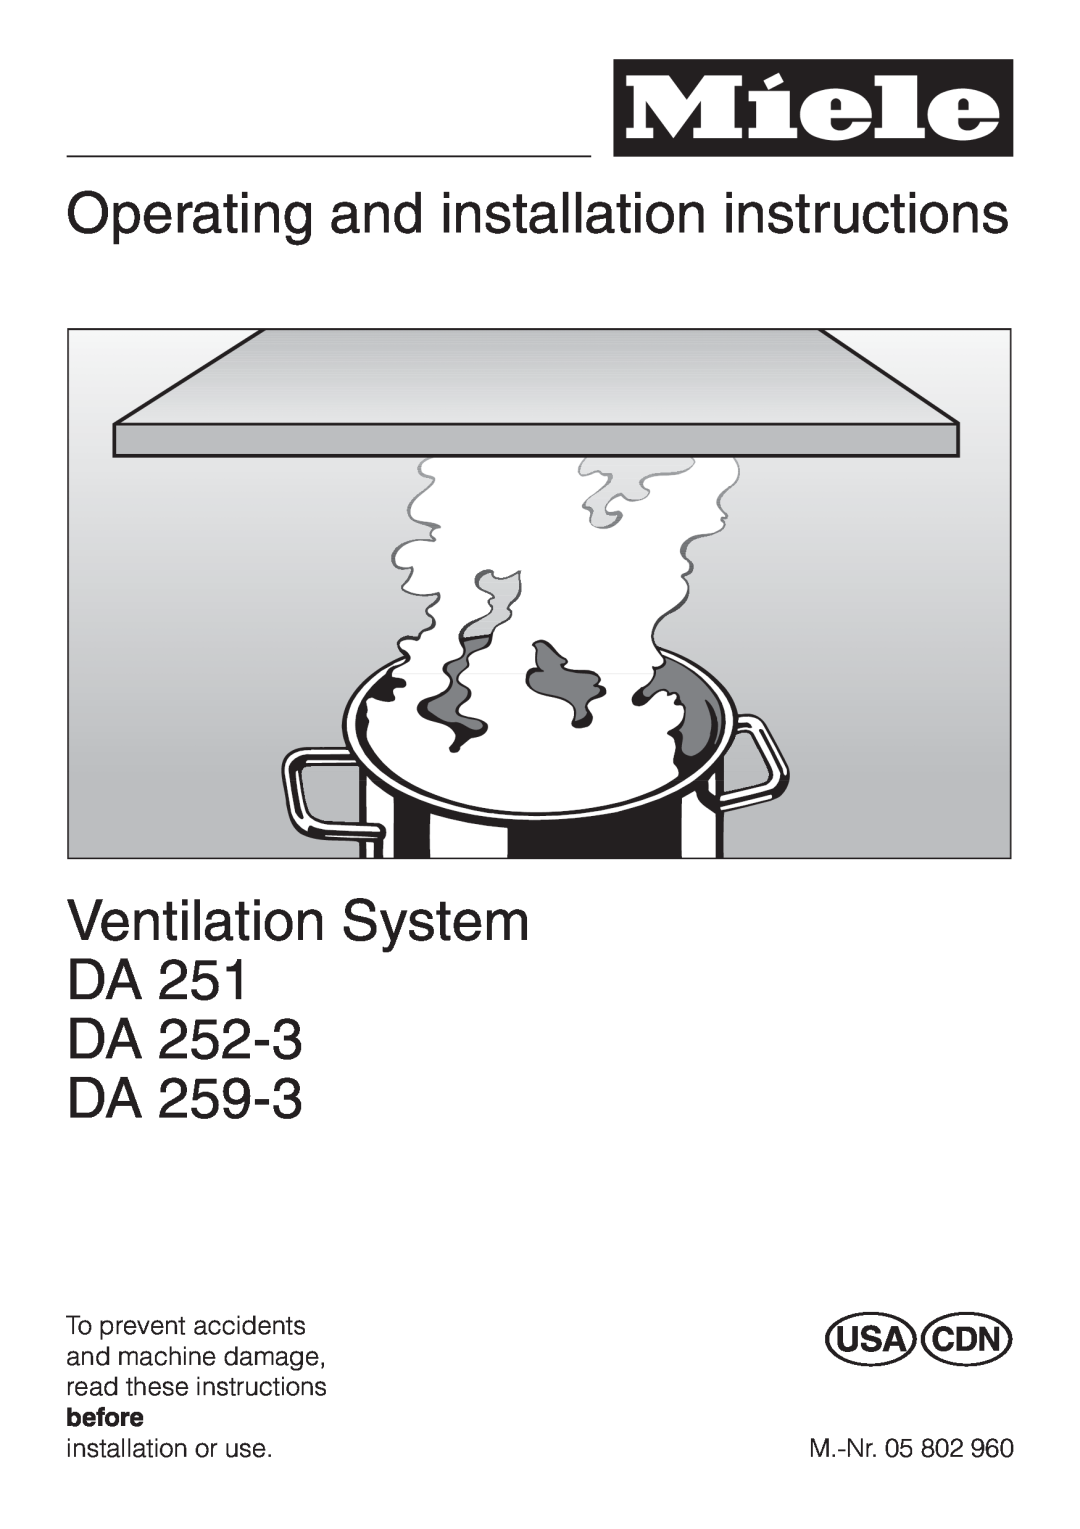 Miele DA252-3, DA259-3 installation instructions Operating and installation instructions, Ventilation System DA DA DA 